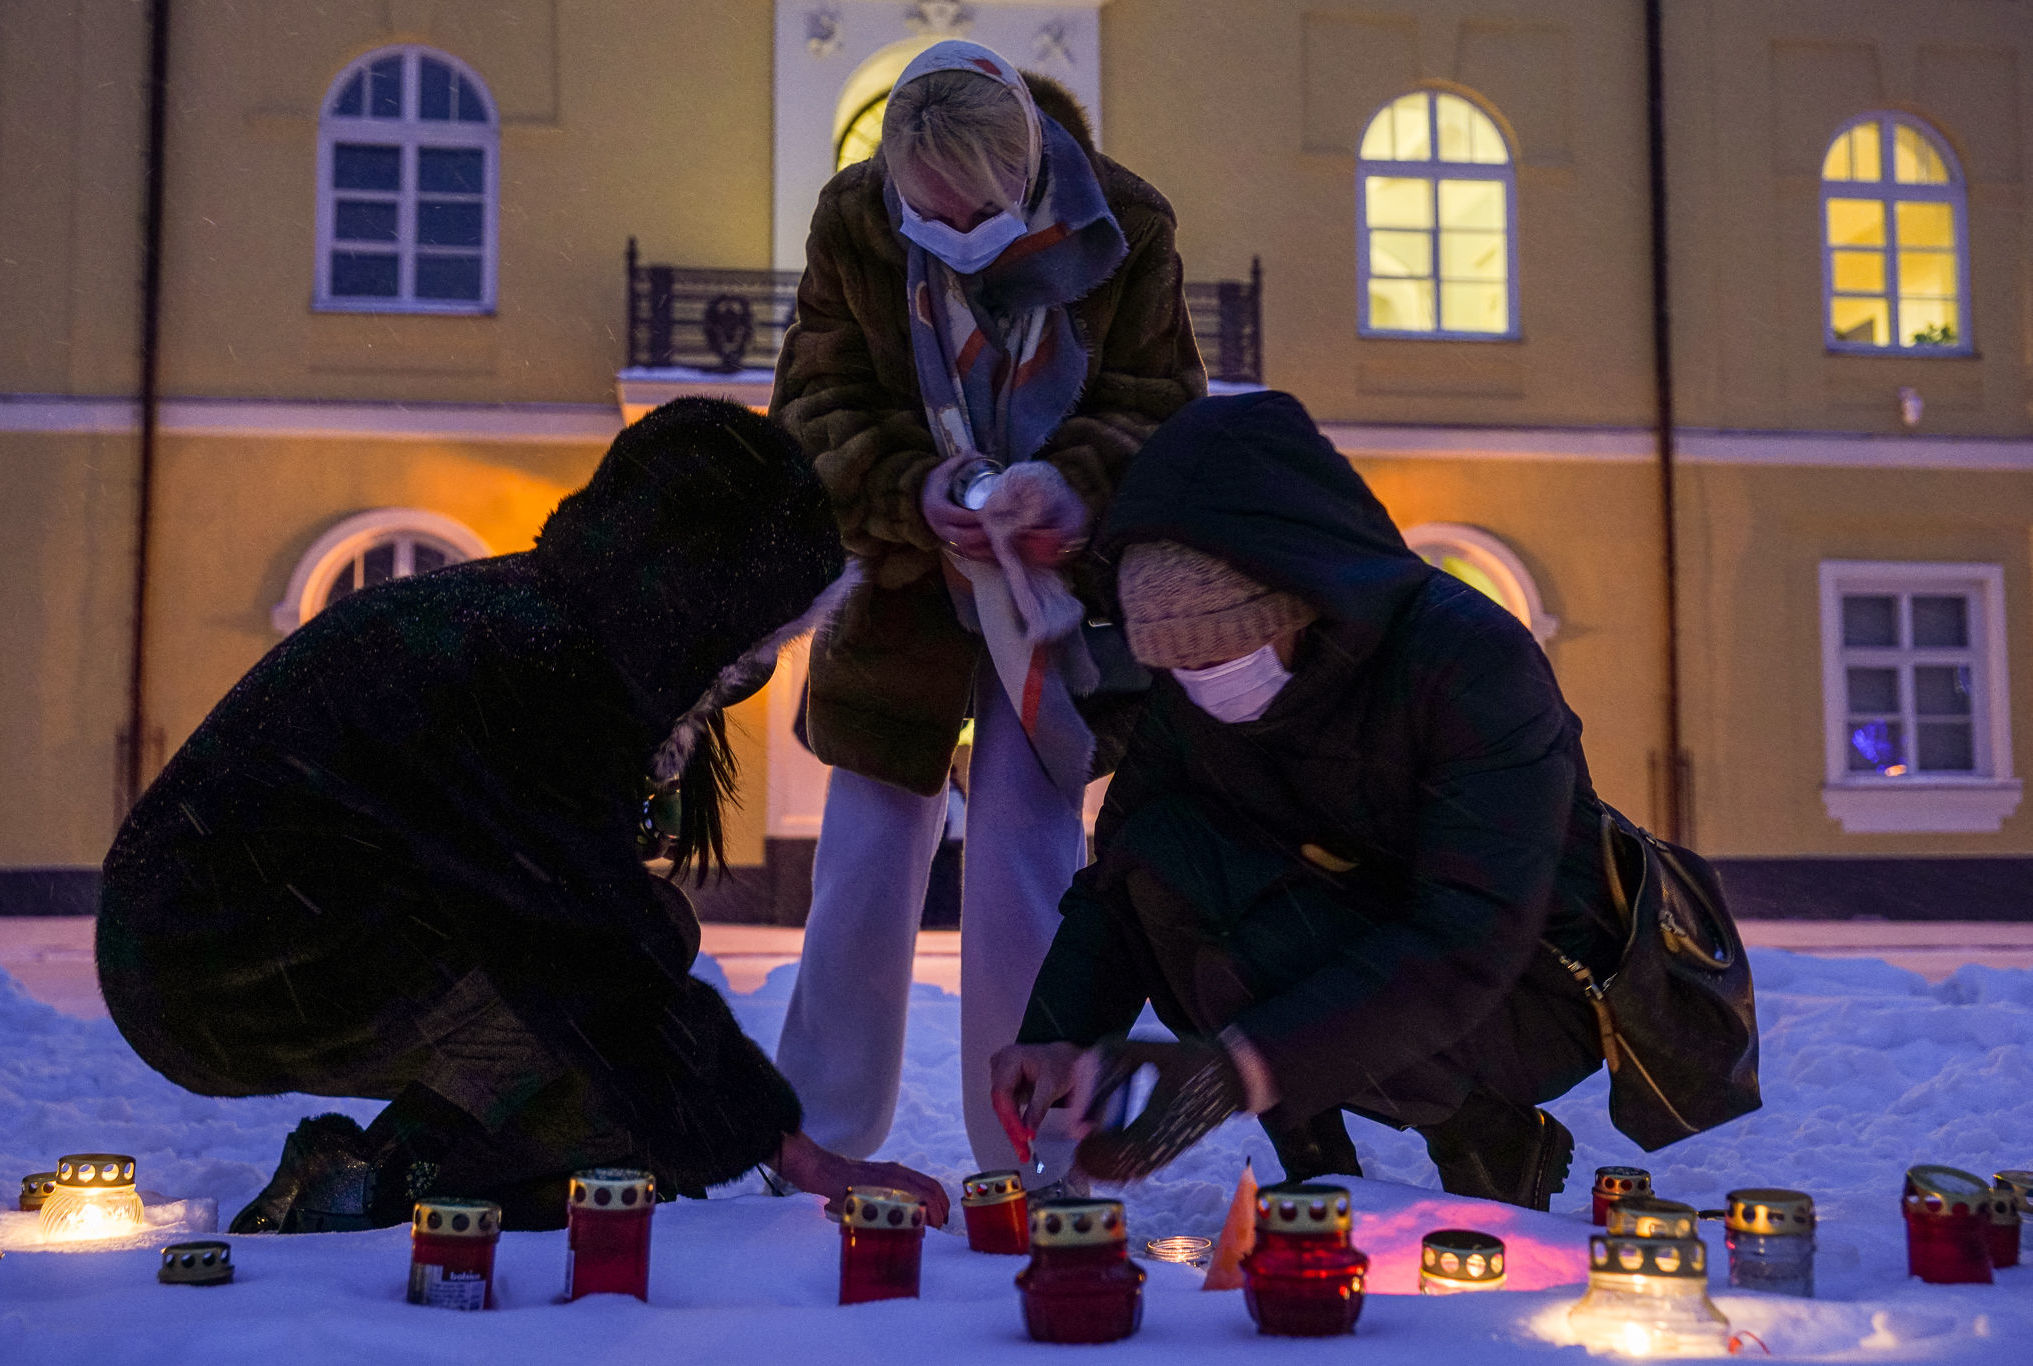 Рижане зажигают свечи у Рижского замка, обращая внимание президента Латвии на трудное положение населения страны из-за введенных ограничений в связи с пандемией COVID-19, 10 февраля 2021